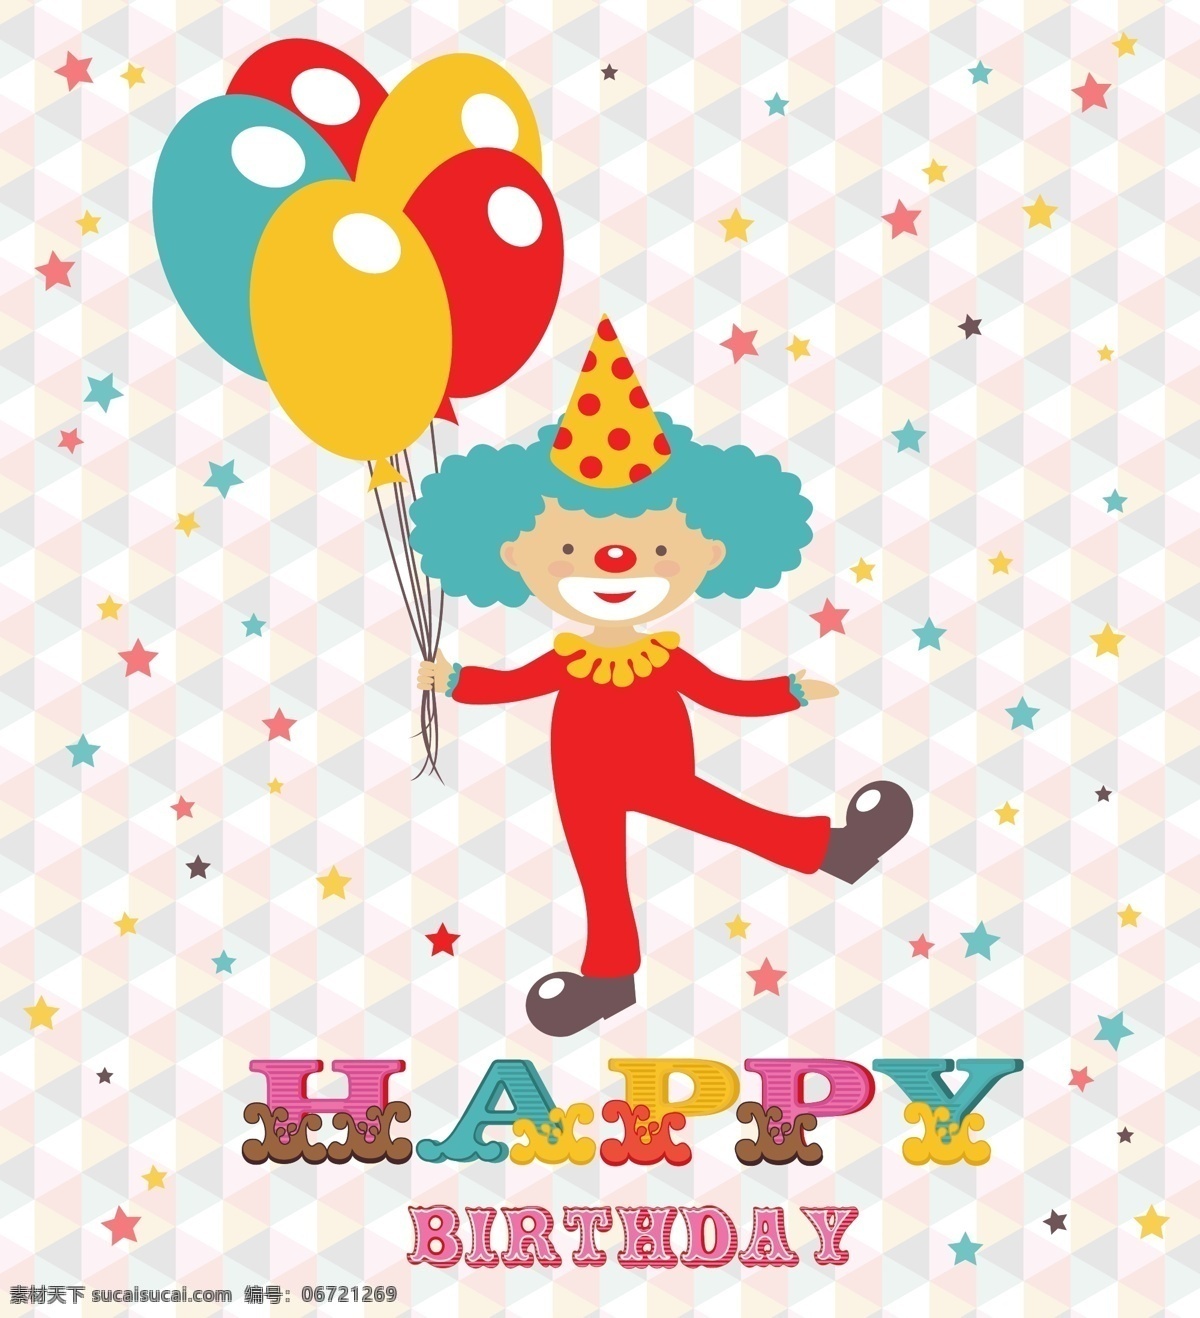 生日背景 彩色气球 小丑 手绘 贺卡 卡片 生日海报 生日礼物 生日庆祝 happy birthday 生日快乐 节日庆祝 文化艺术